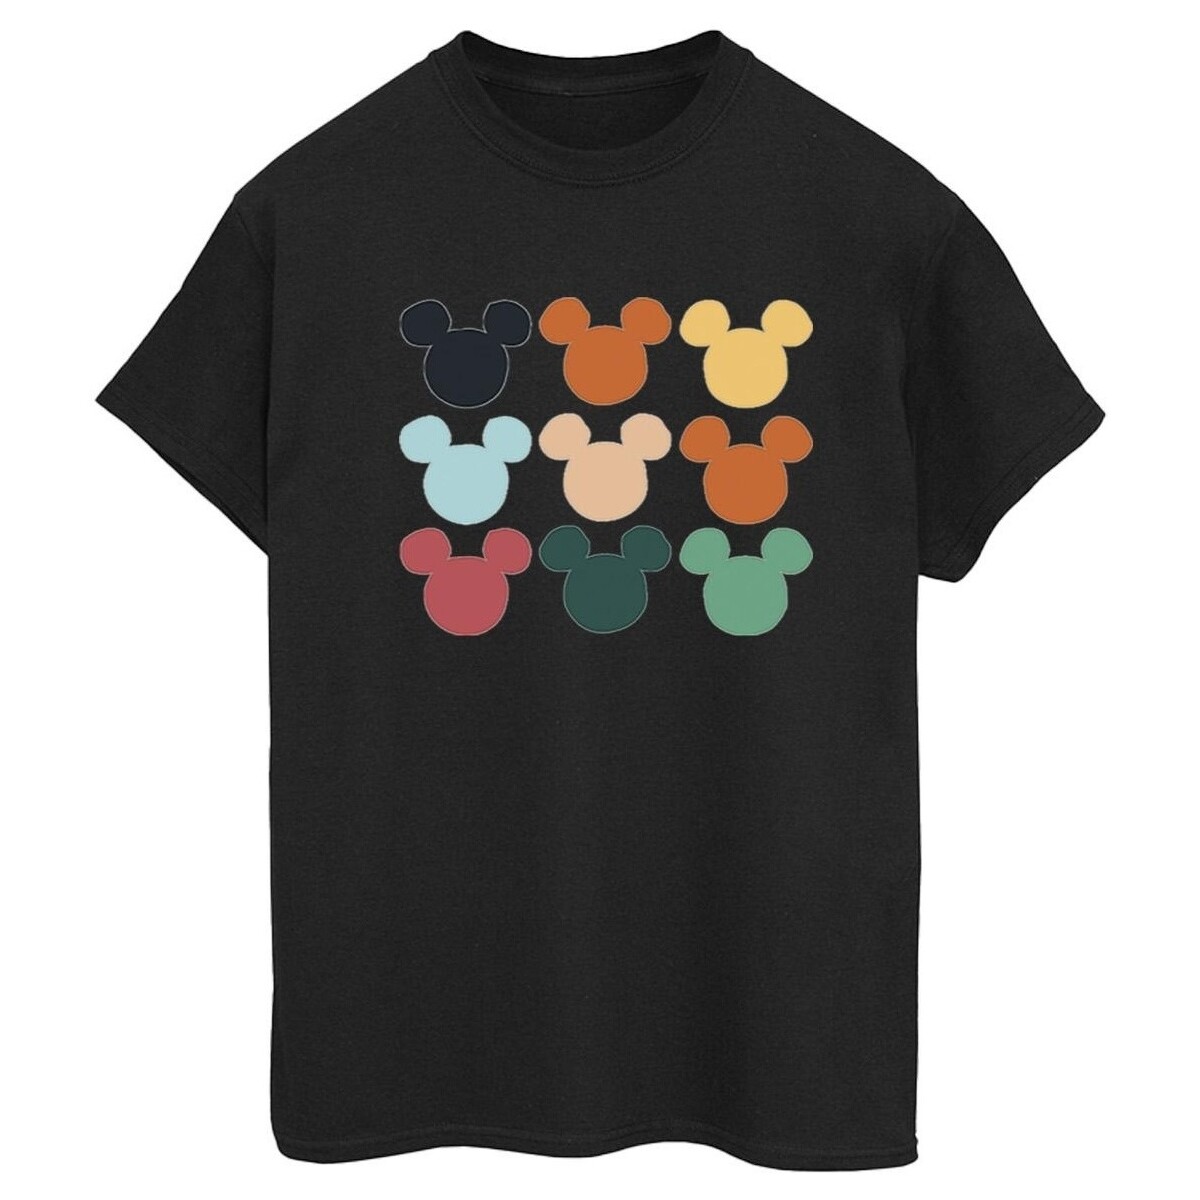 Vêtements Femme T-shirts manches longues Disney Mickey Mouse Heads Square Noir